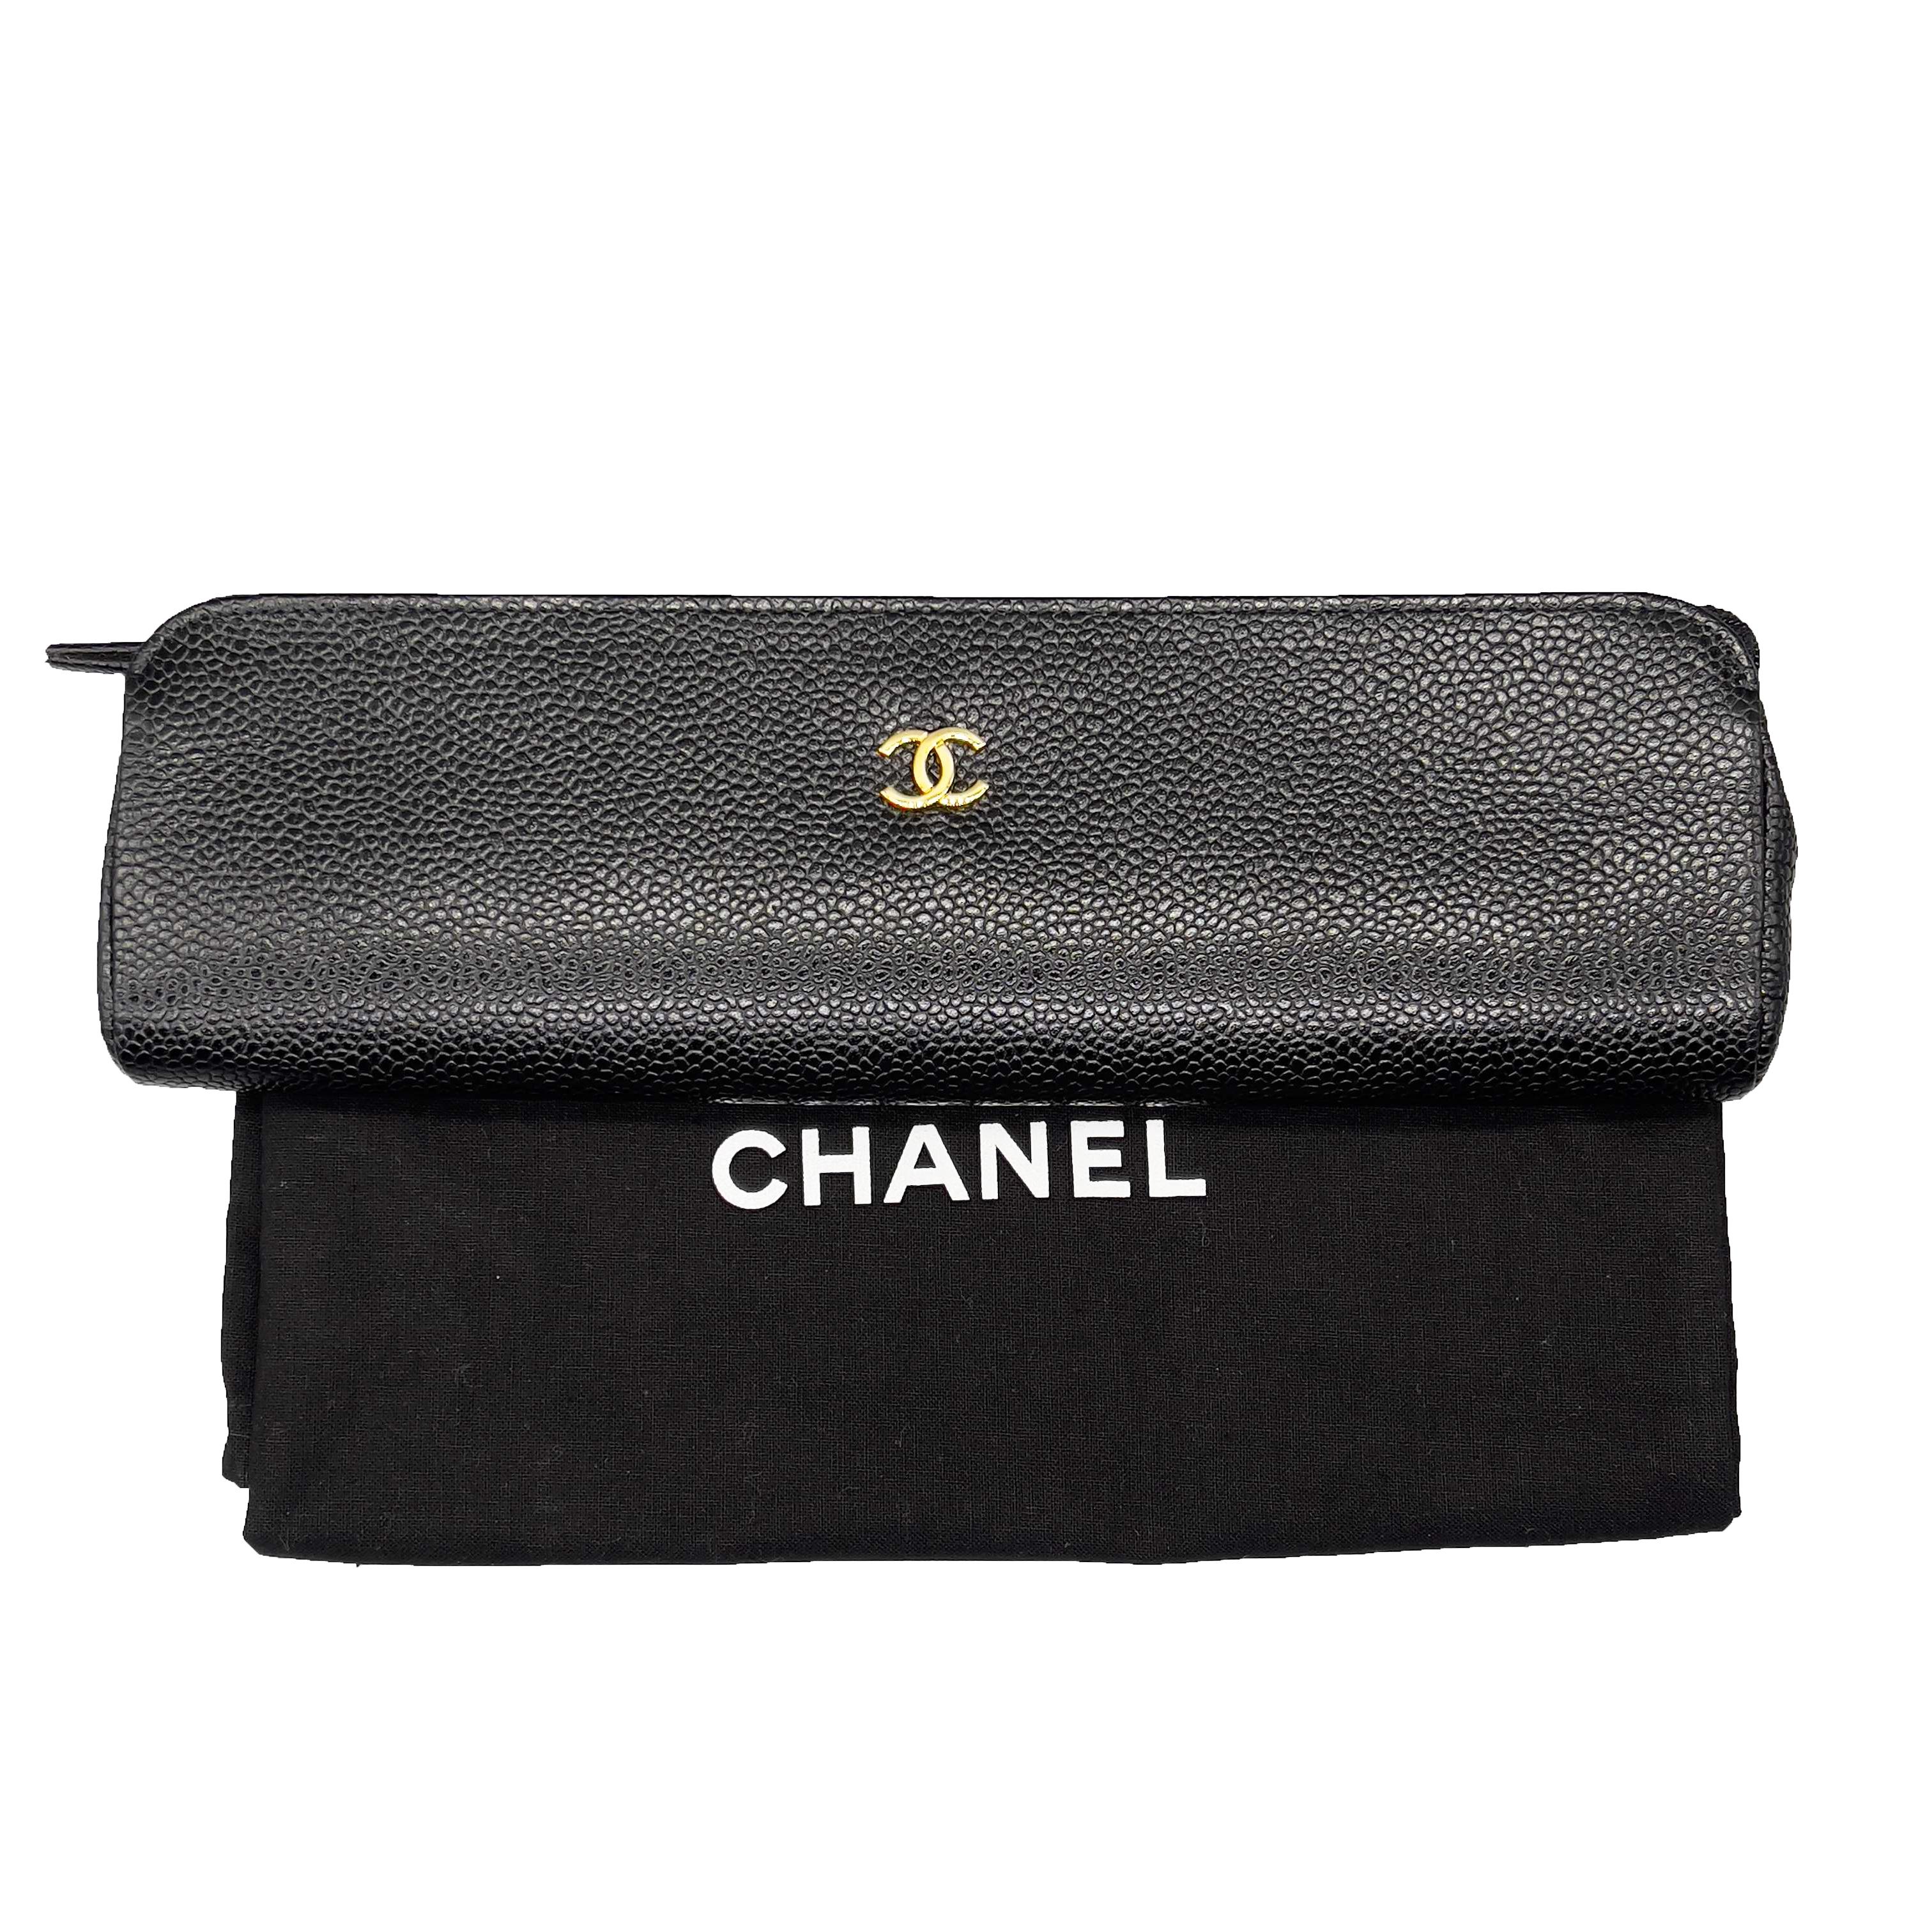 CHANEL Vintage 1996 Black Case / Pouch / Makeup Bag Caviar Leather / CC Logo For Sale 2